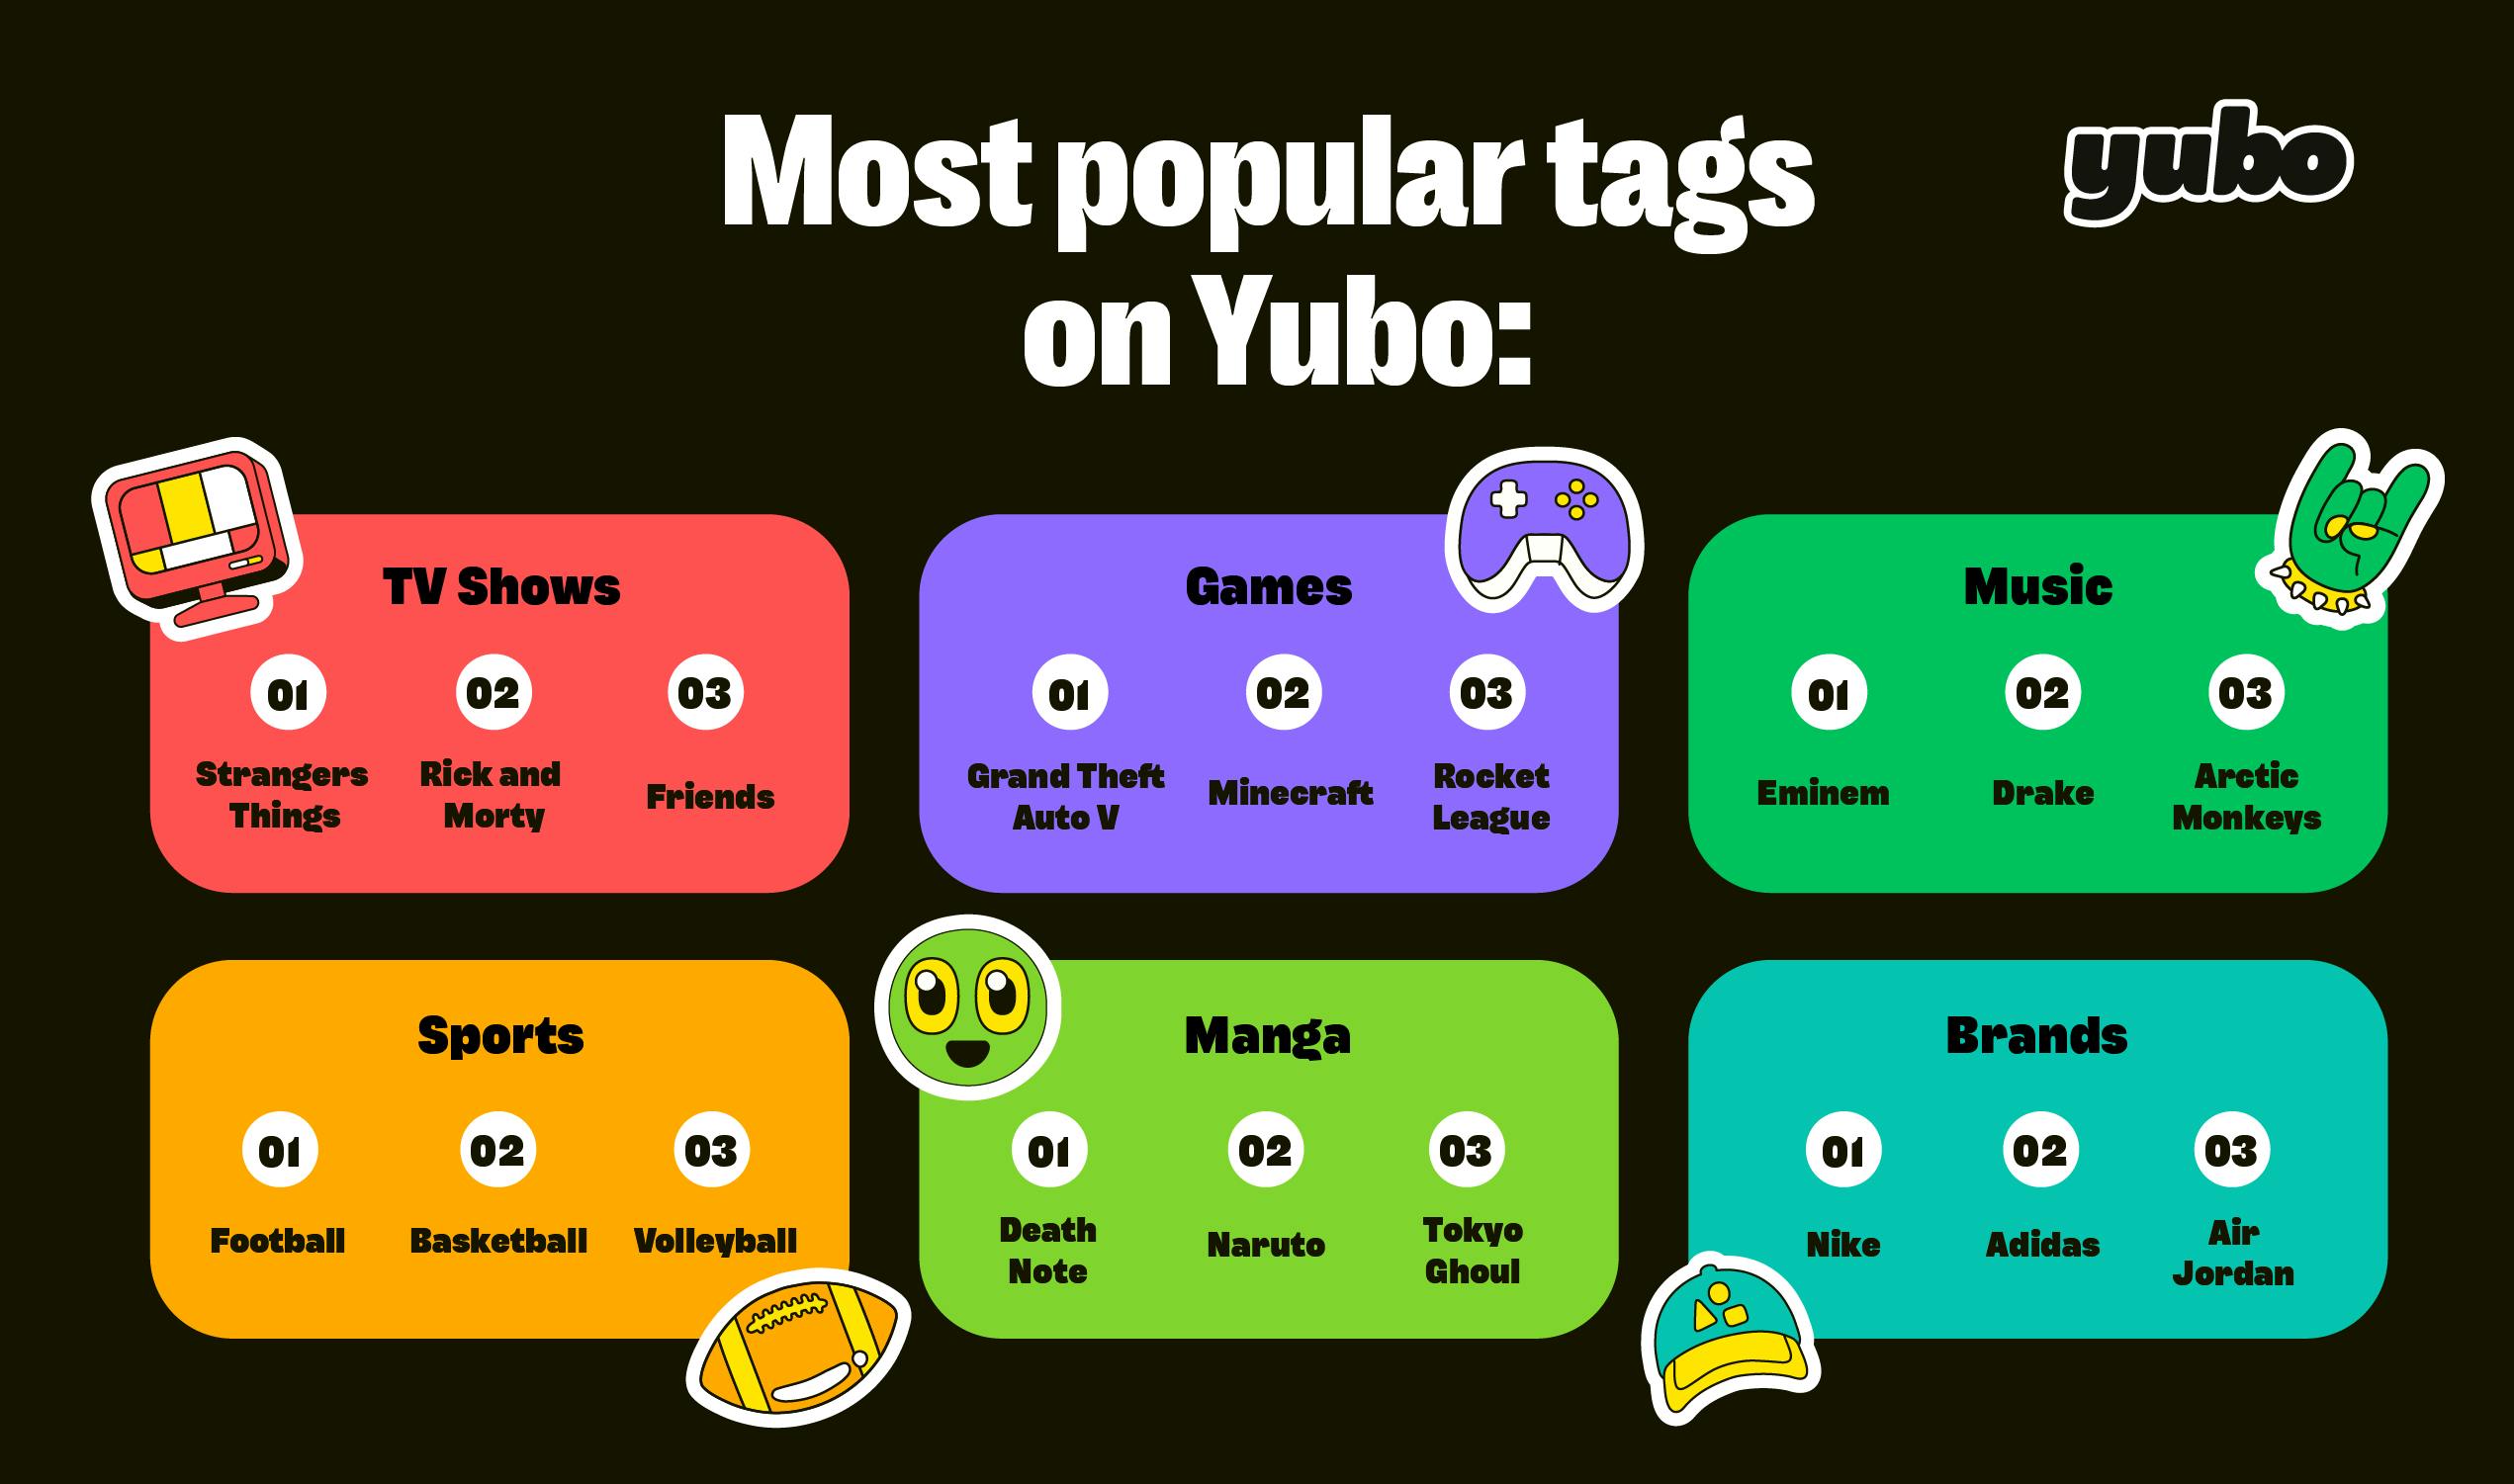 Tags más populares en Yubo. 6 categorías presentes: Progammas de TV, Juegos, Música, Deportes, Manga y Marca